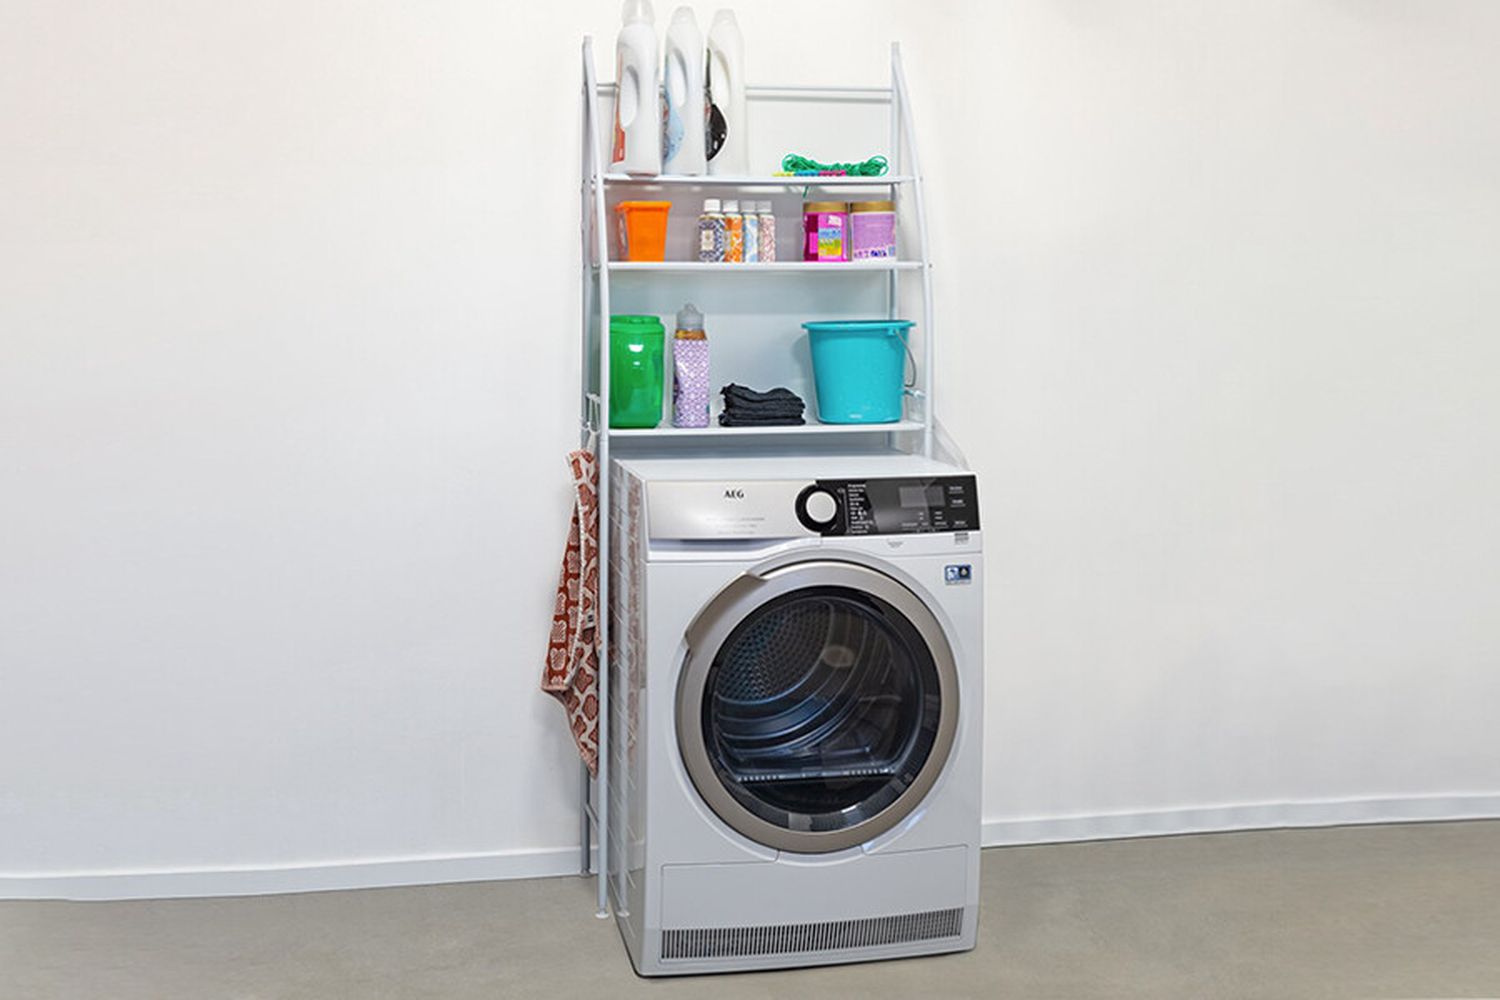 Étagère machine à laver, en aluminium, haute 154 cm, léger et